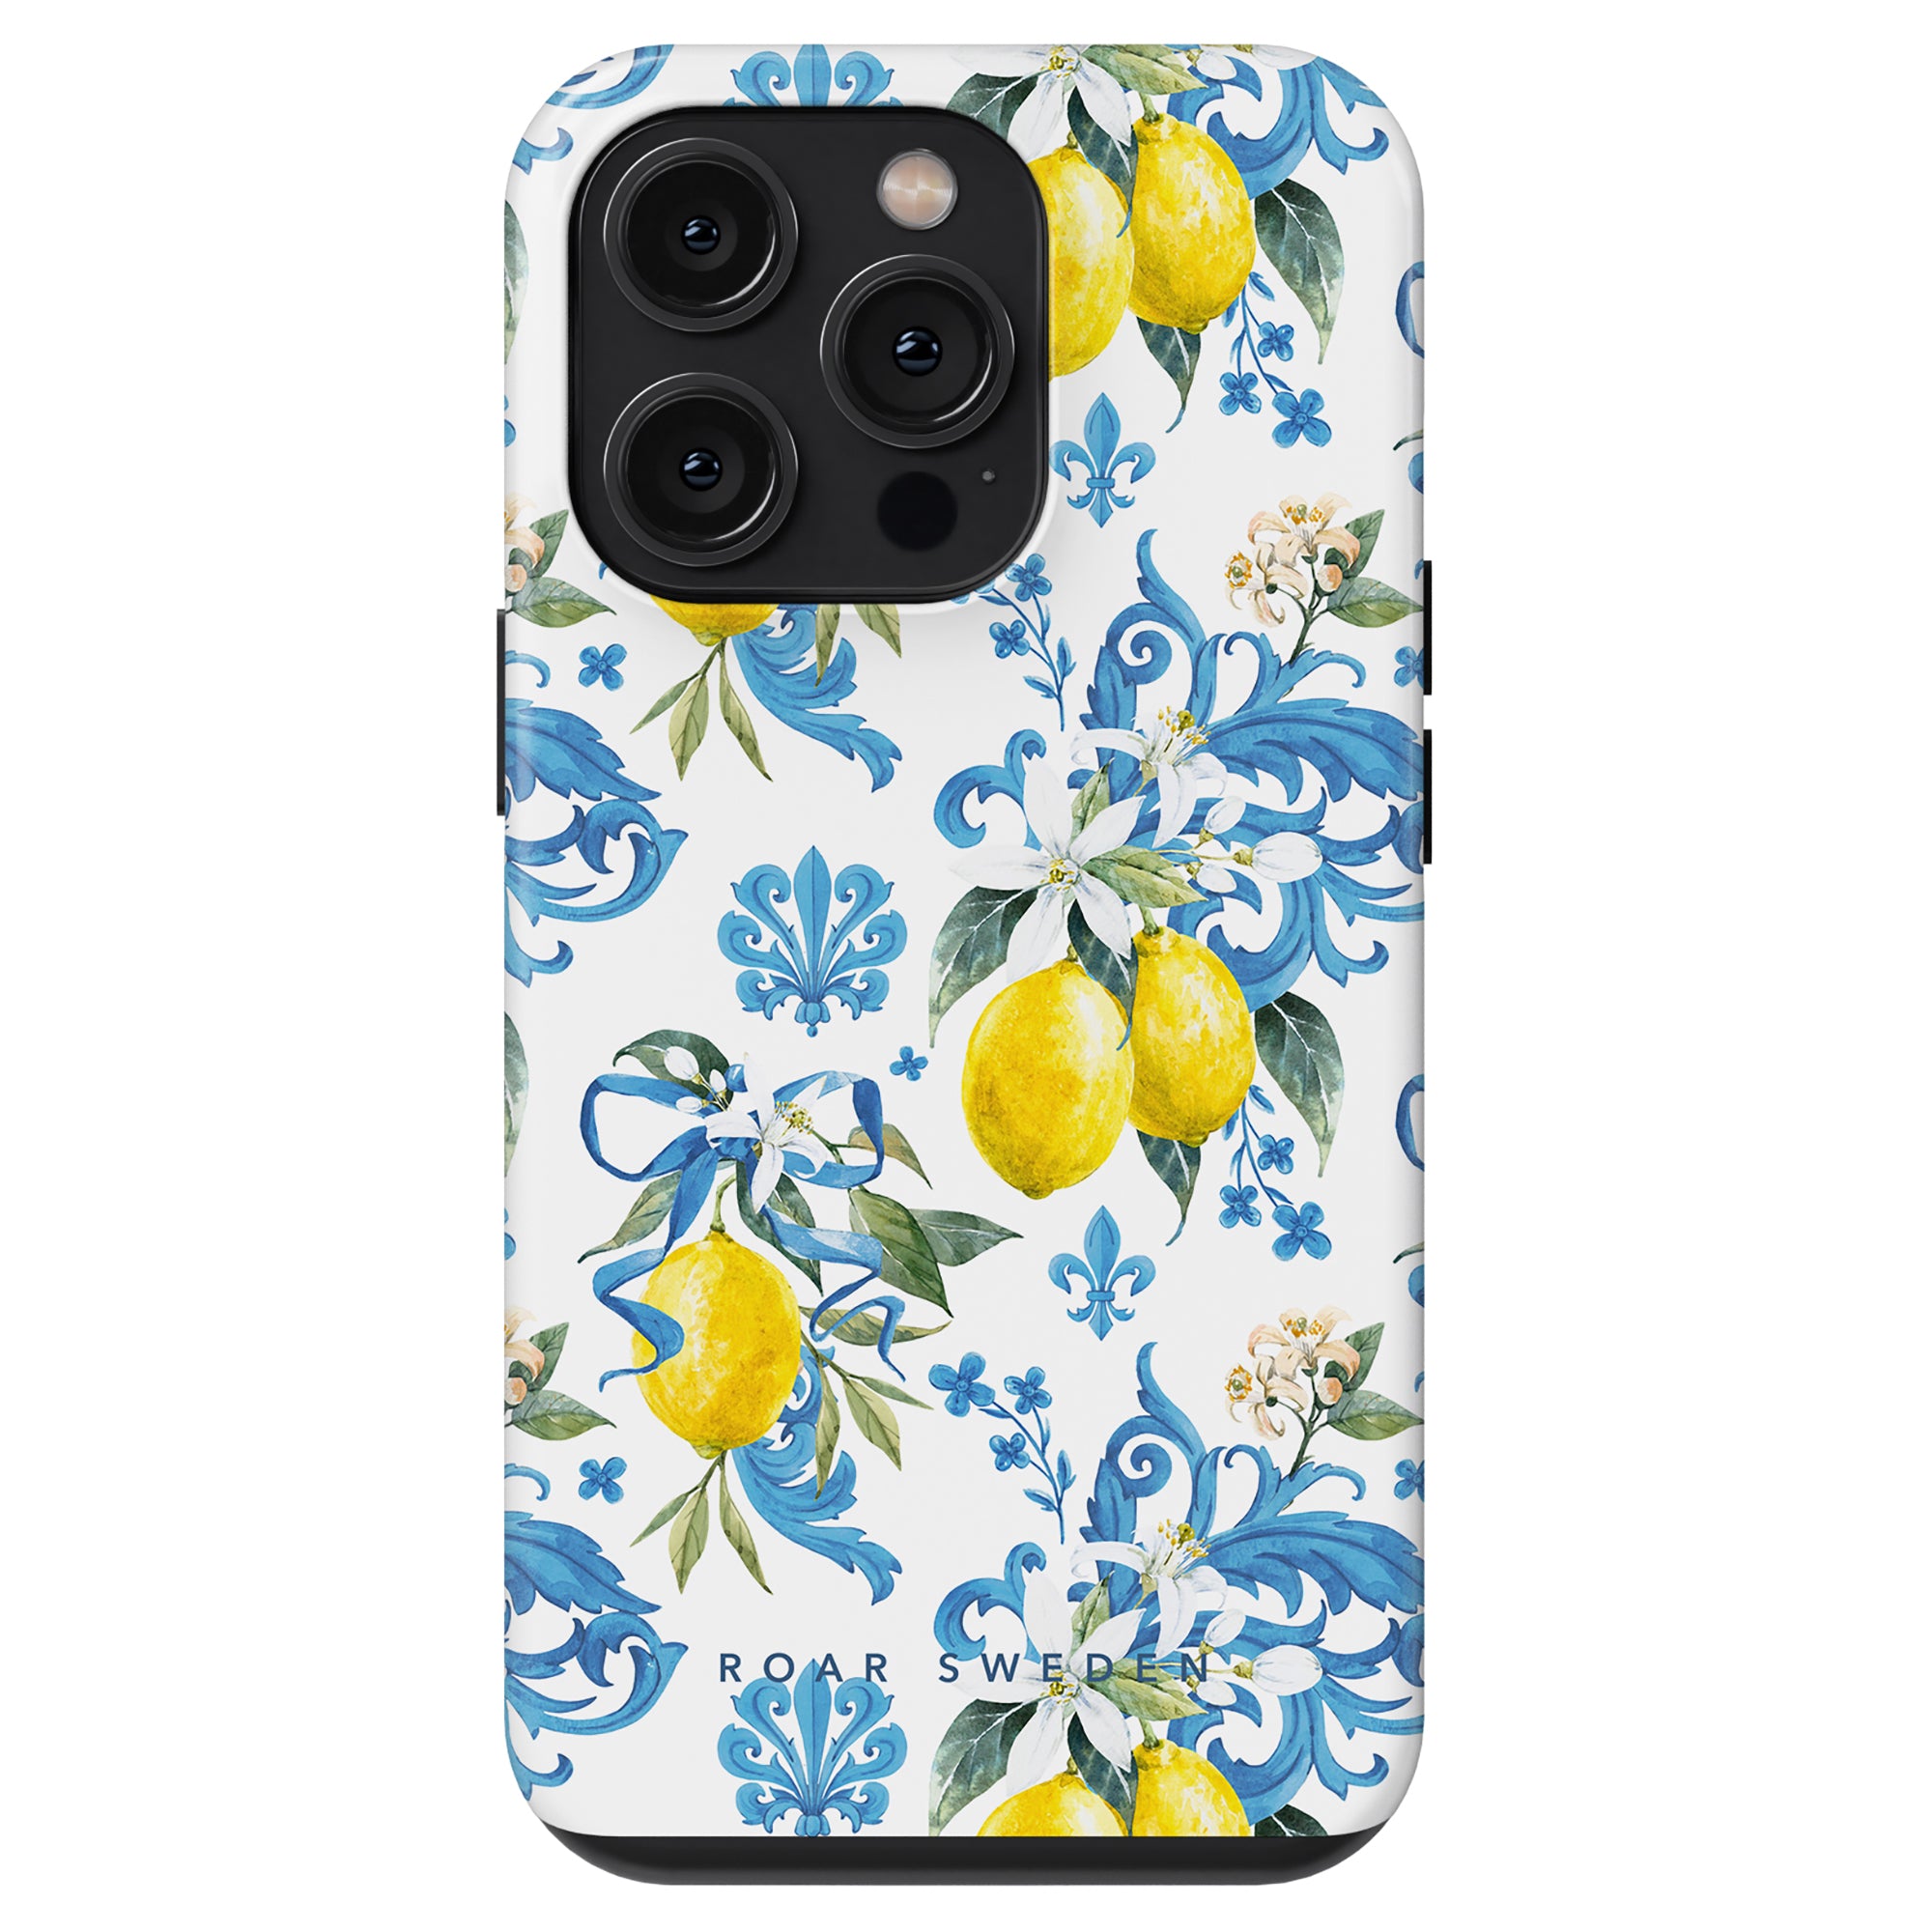 En Bianca - Tough case med citroner och blått blommönster, inspirerad av siciliansk kultur, designad för en modell med två kameror.